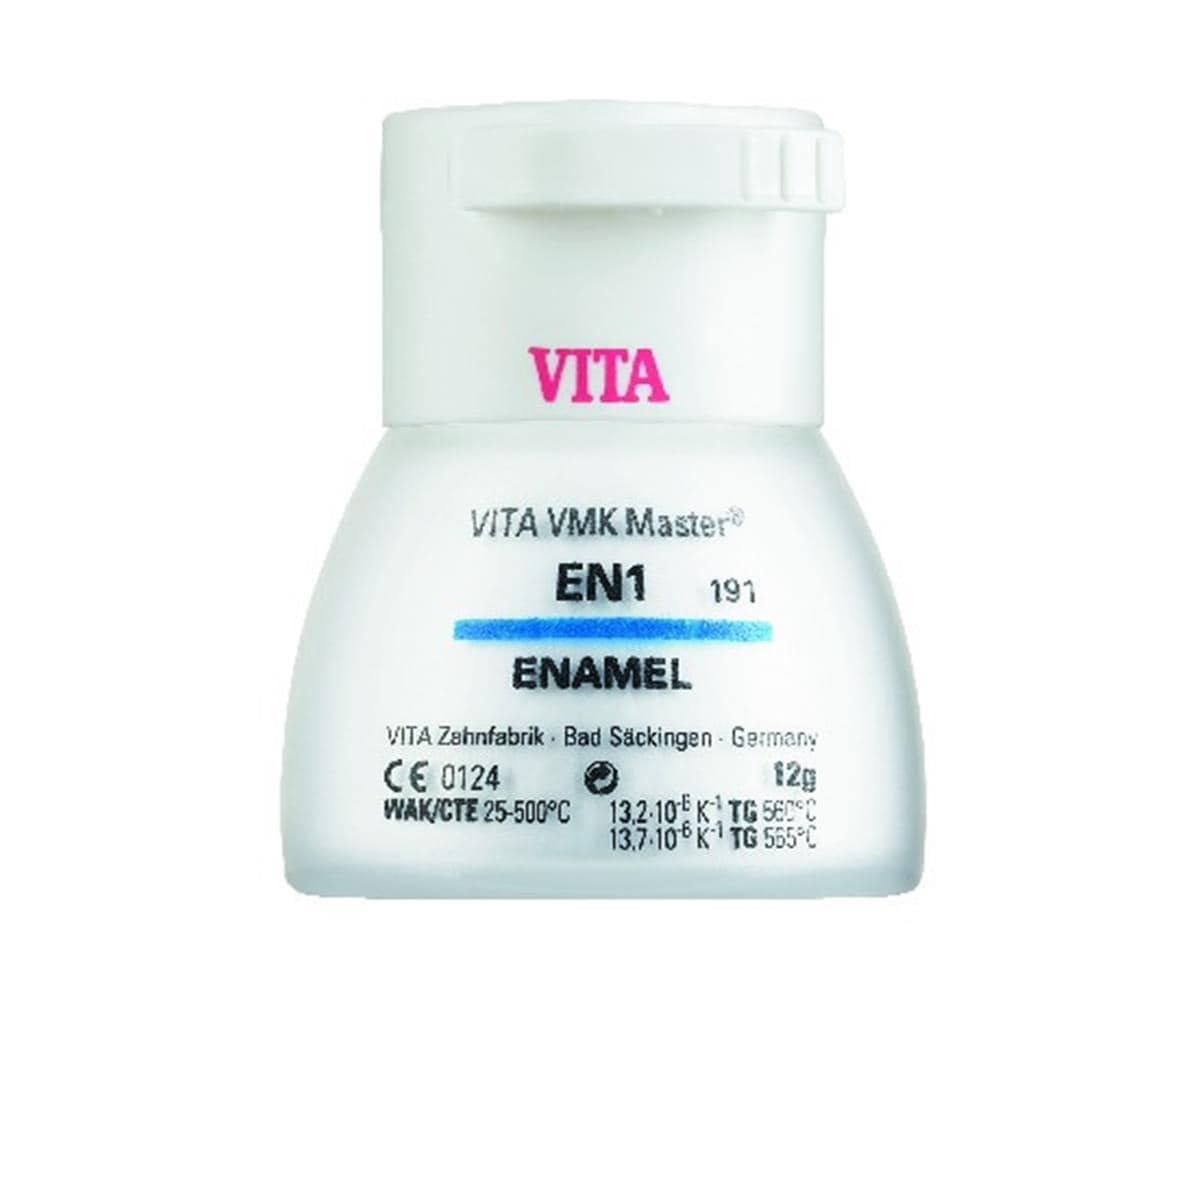 VMK Master VITA - Enamel - EN3 - Le pot de 12 g